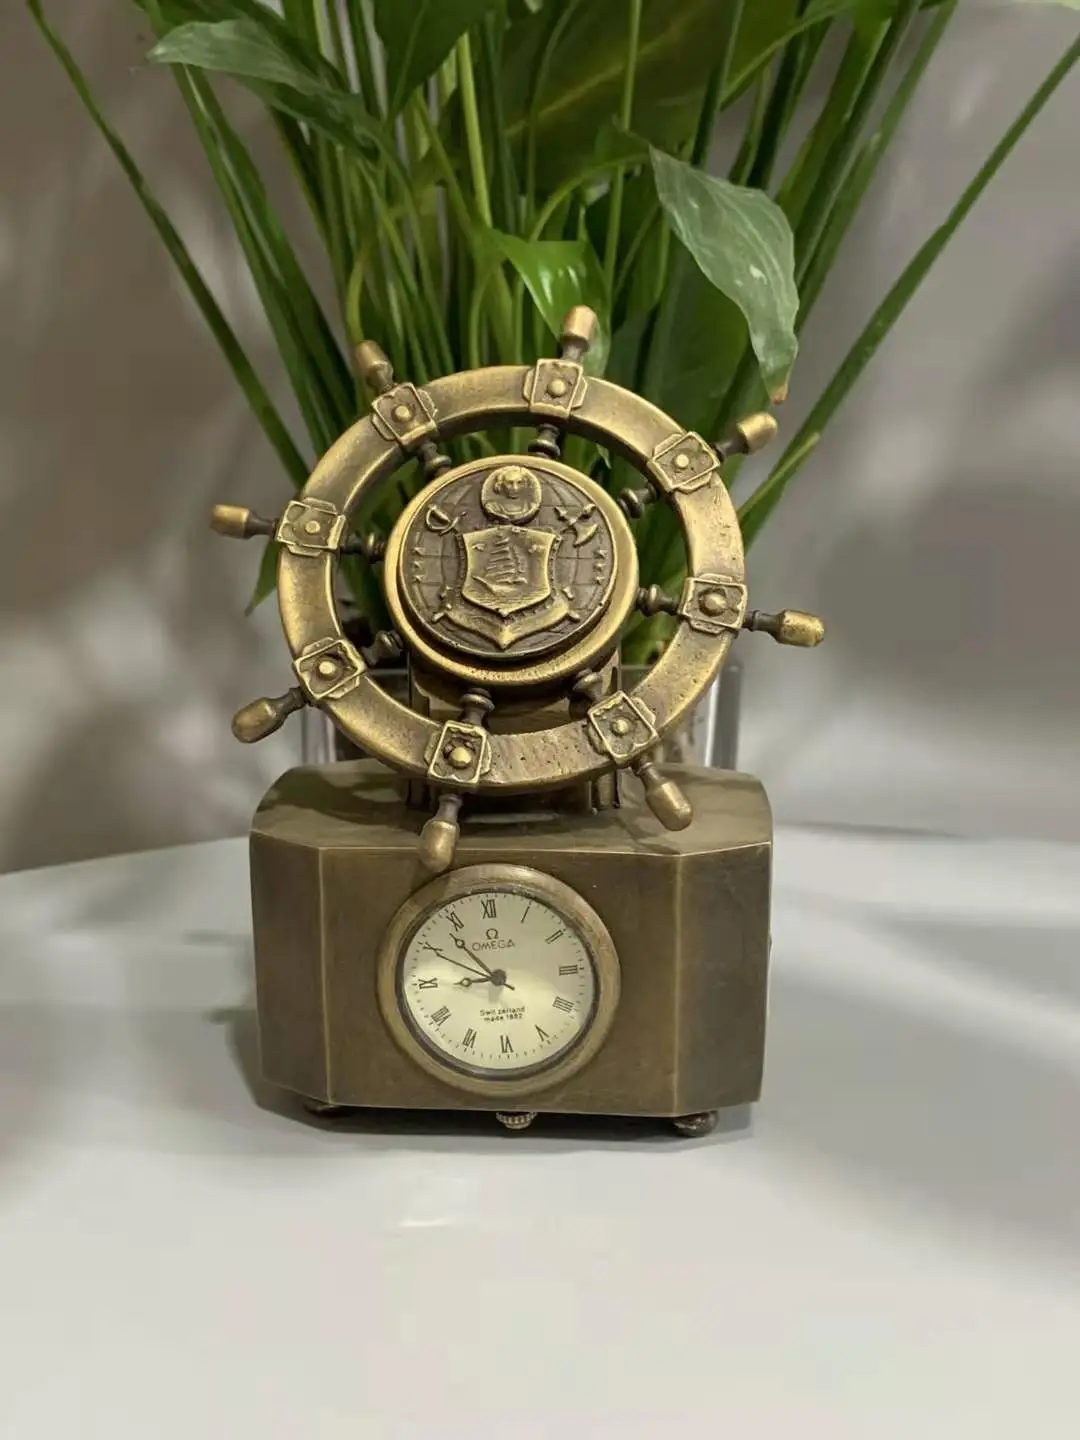 

Редкие часы старой династии Цин королевская латунь Механические карманные часы, может работать, морской корабль, бесплатная доставка